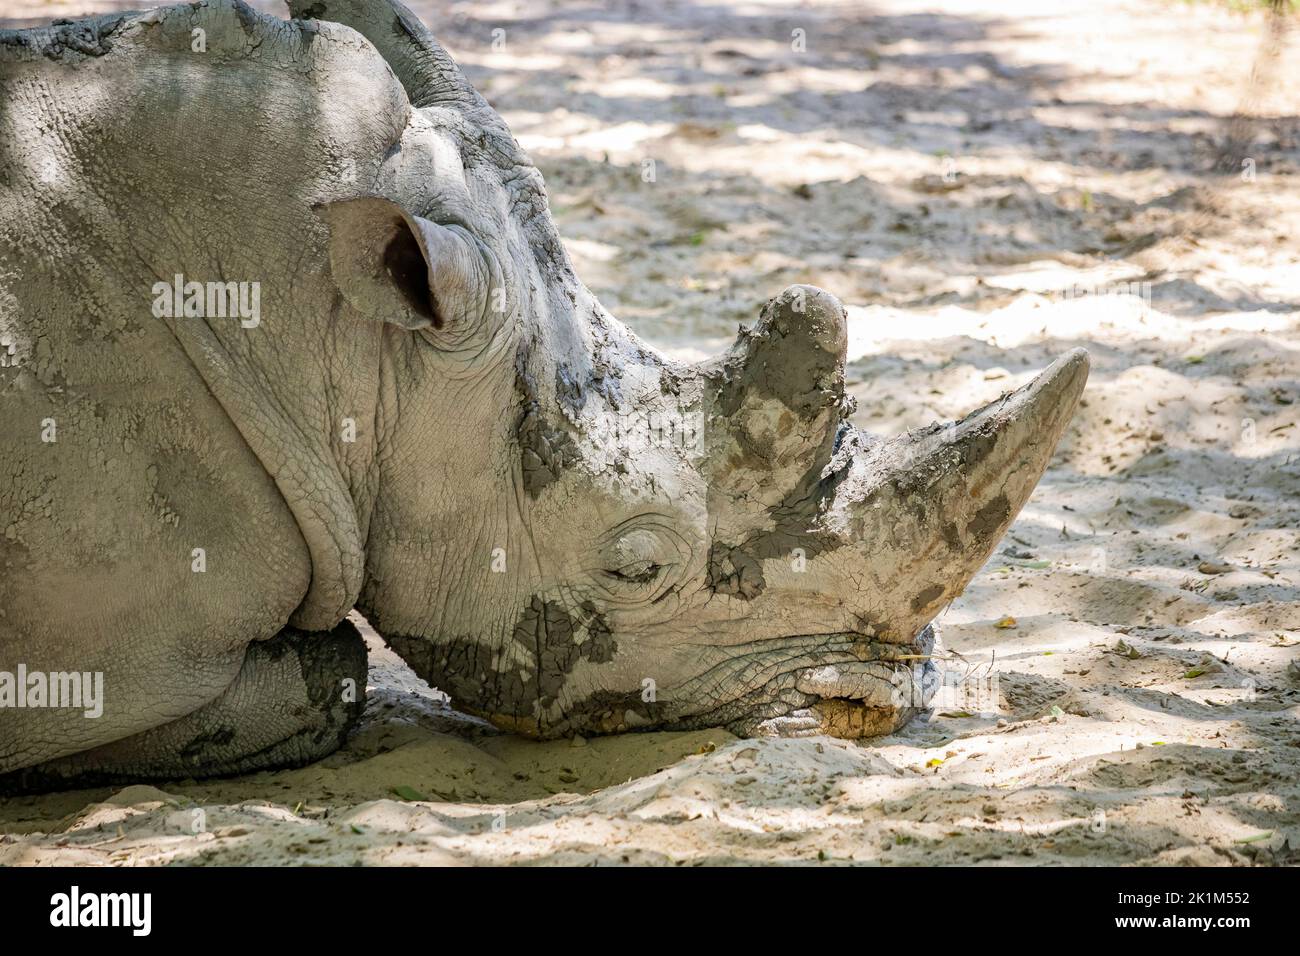 Ein großes graues Nashorn schläft, ausgestreckt auf dem Boden, seine dicke faltige Haut mit Schlamm bedeckt. Die beiden großen Hörner auf dem Kopf. Stockfoto